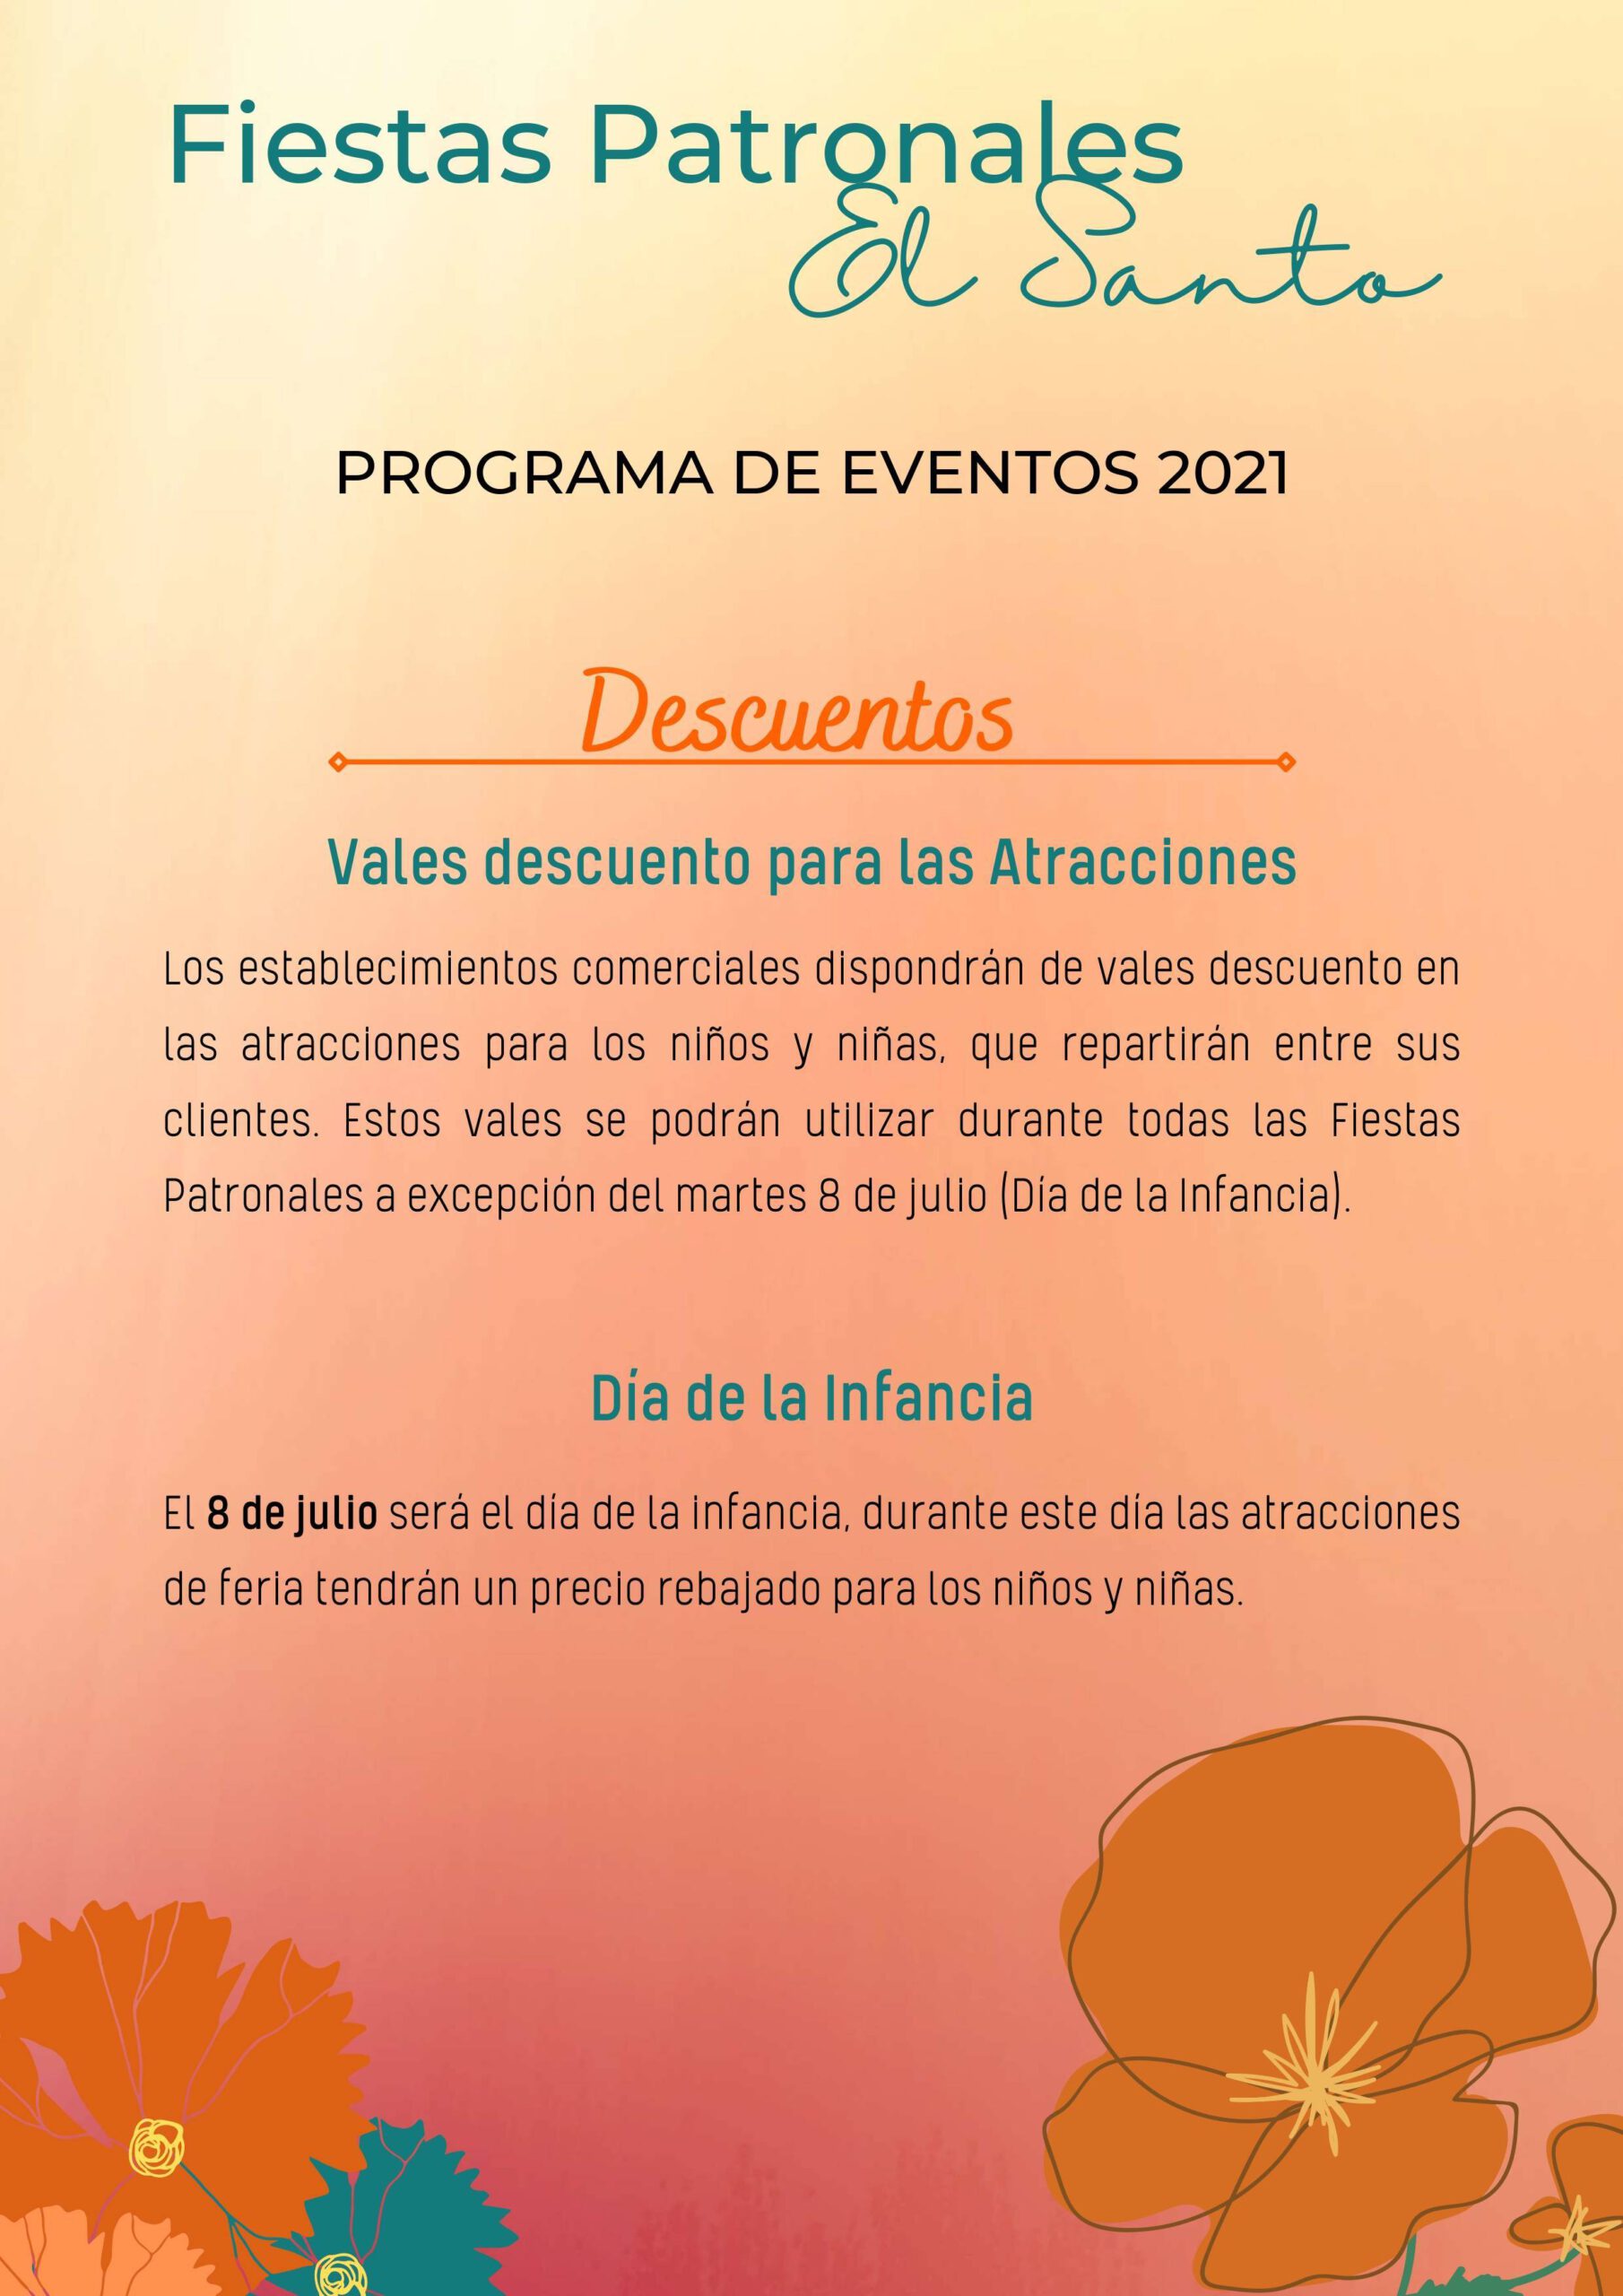 Fiestas patronales de El Santo (2021) - Montilla (Córdoba) 2